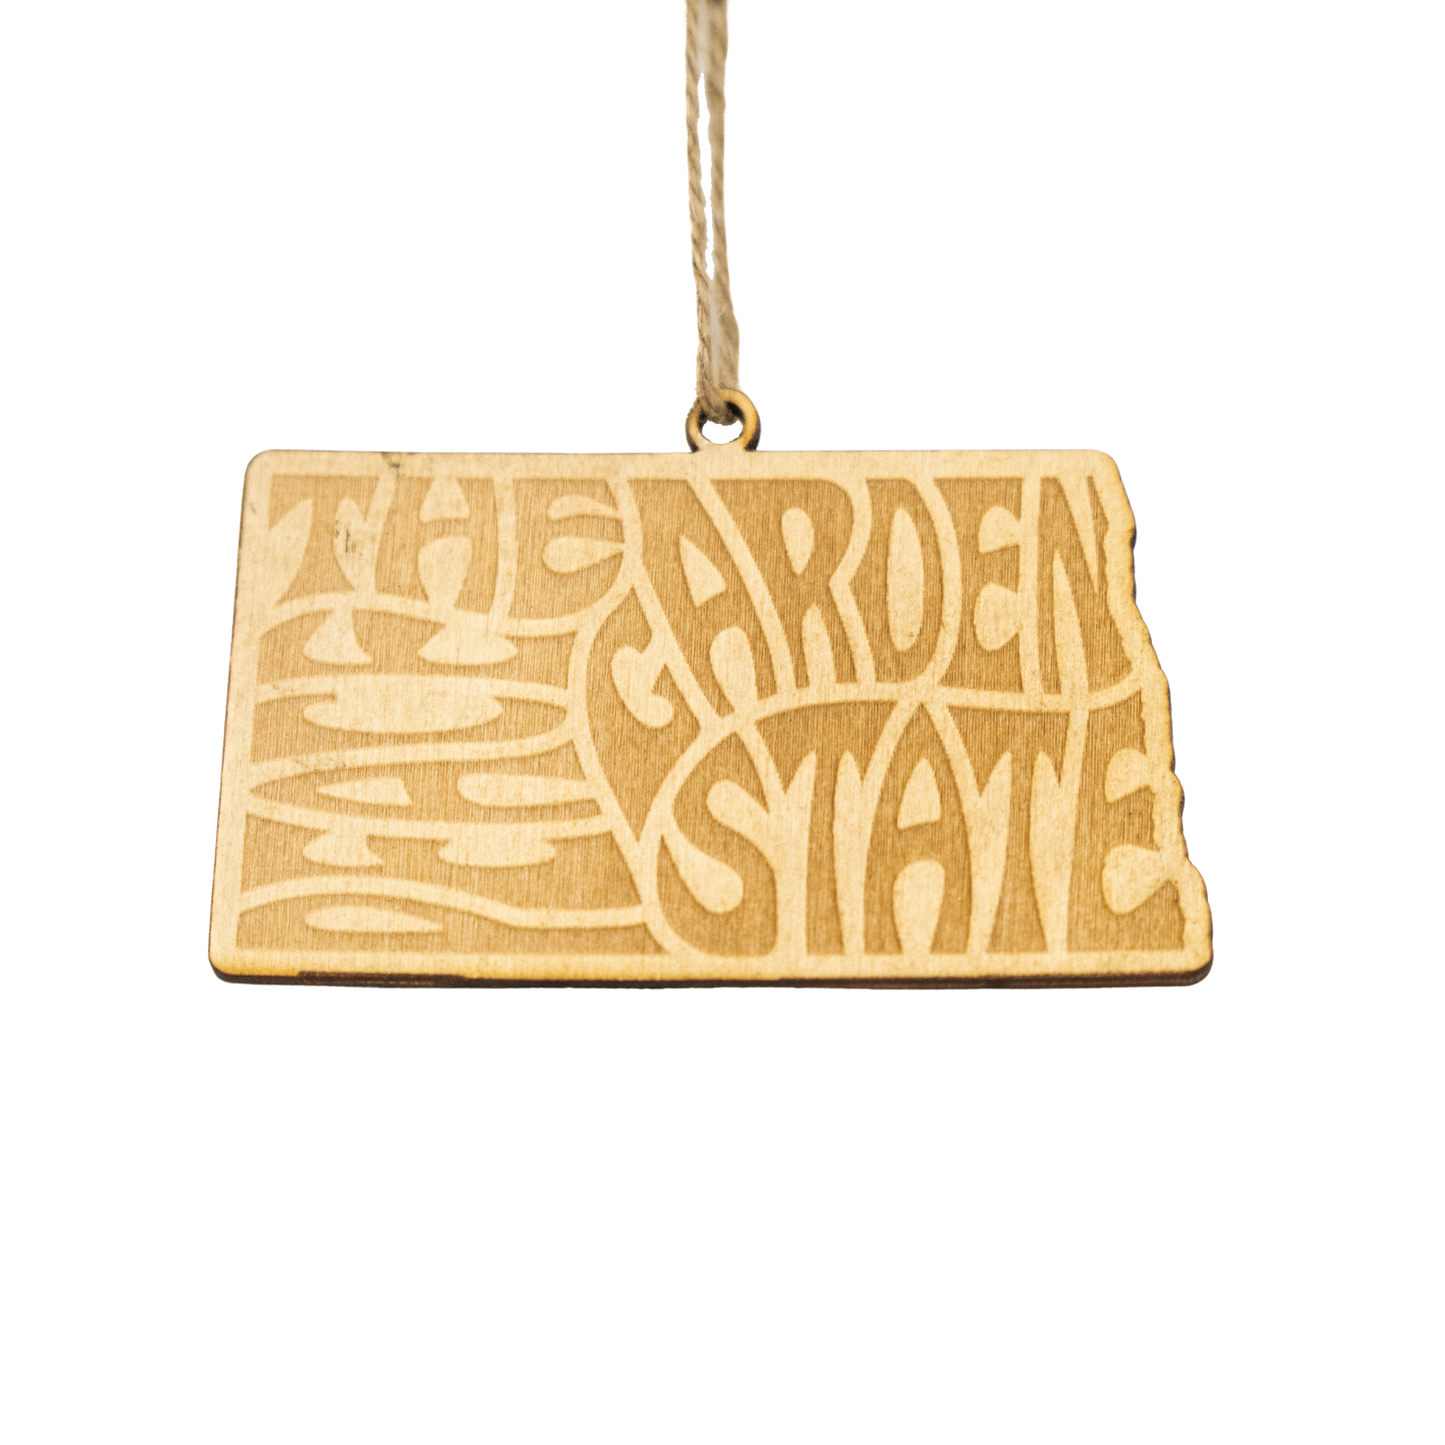 North Dakota State Nickname Ornament